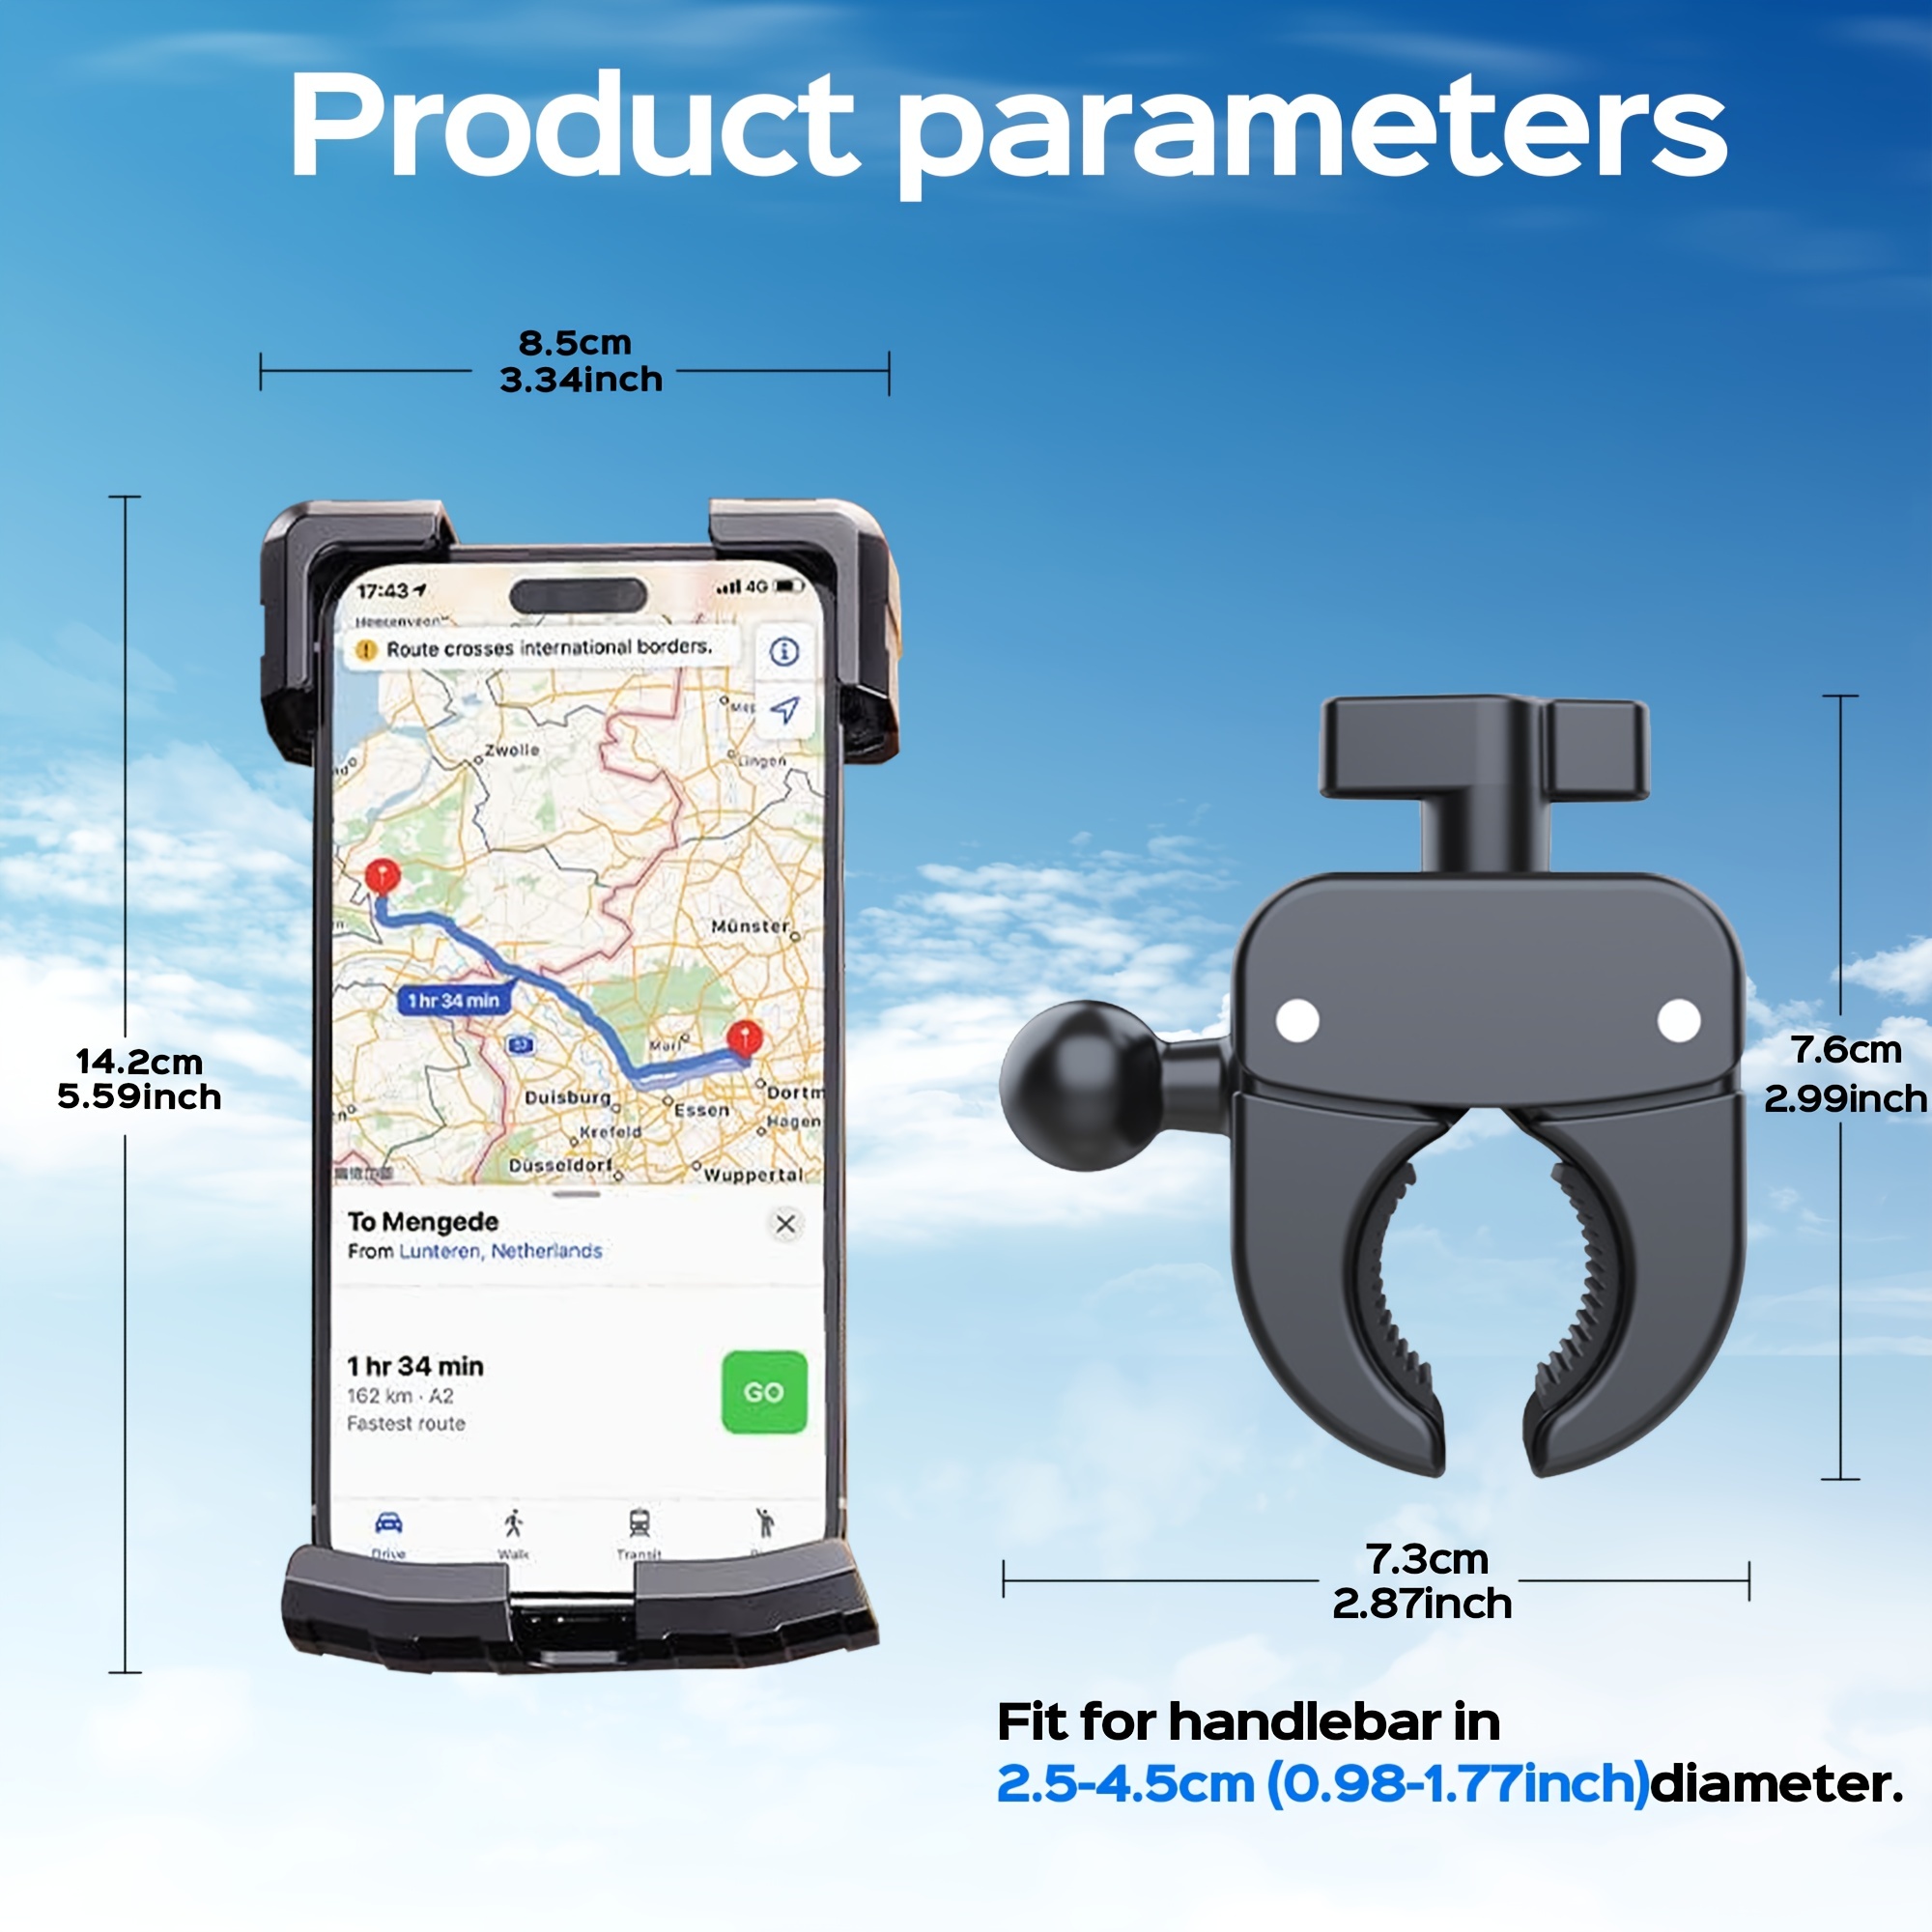 Soporte HR de bicicleta con base universal horizontal para GPS y Smartphone